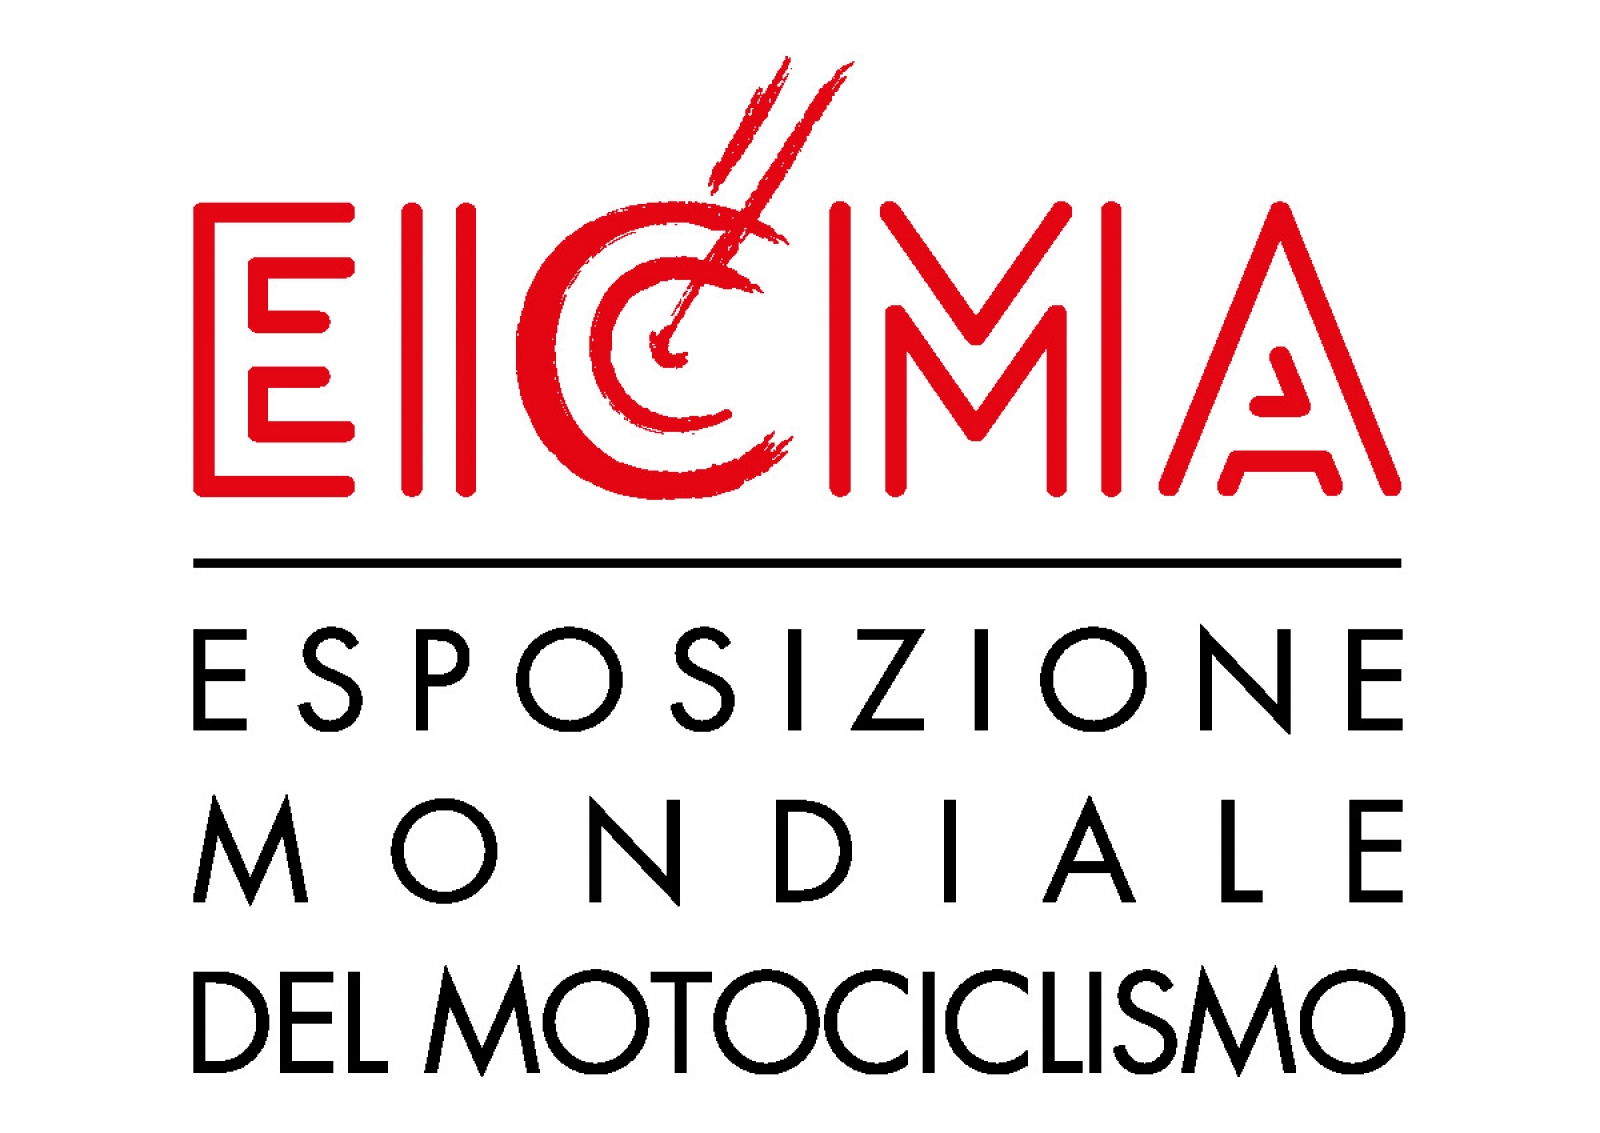 SONO APERTI I CASTING ON LINE PER EICMA ESPOSIZIONE MONDIALE DEL MOTOCICLISMO DAL 7 AL 12 NOVEMBRE SUPER TOP GIRLS BY SFINGE COMMUNICATION